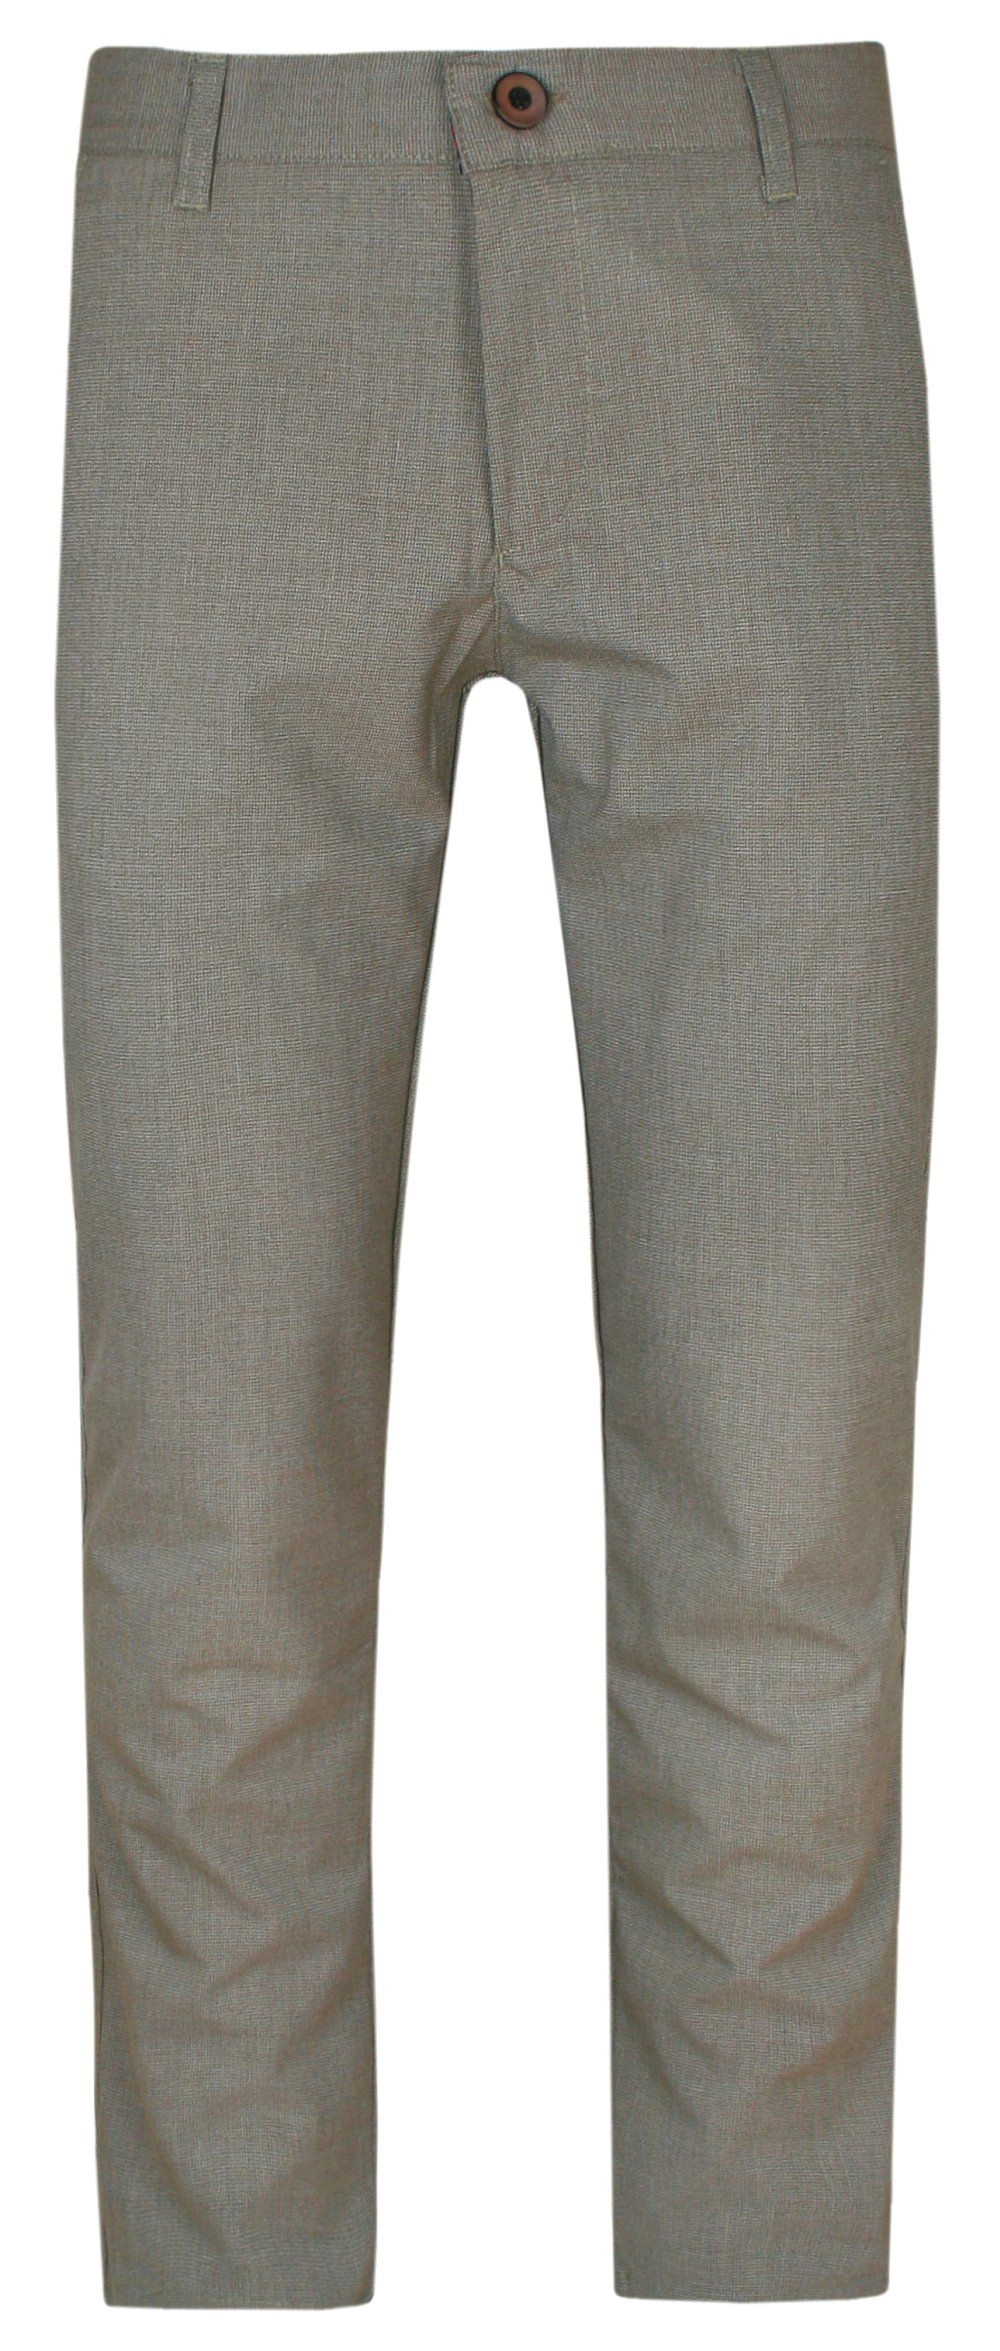 Spodnie Męskie Beżowe w Drobną Kaszkę Casualowe, Chinosy z Elastanem -RIGON